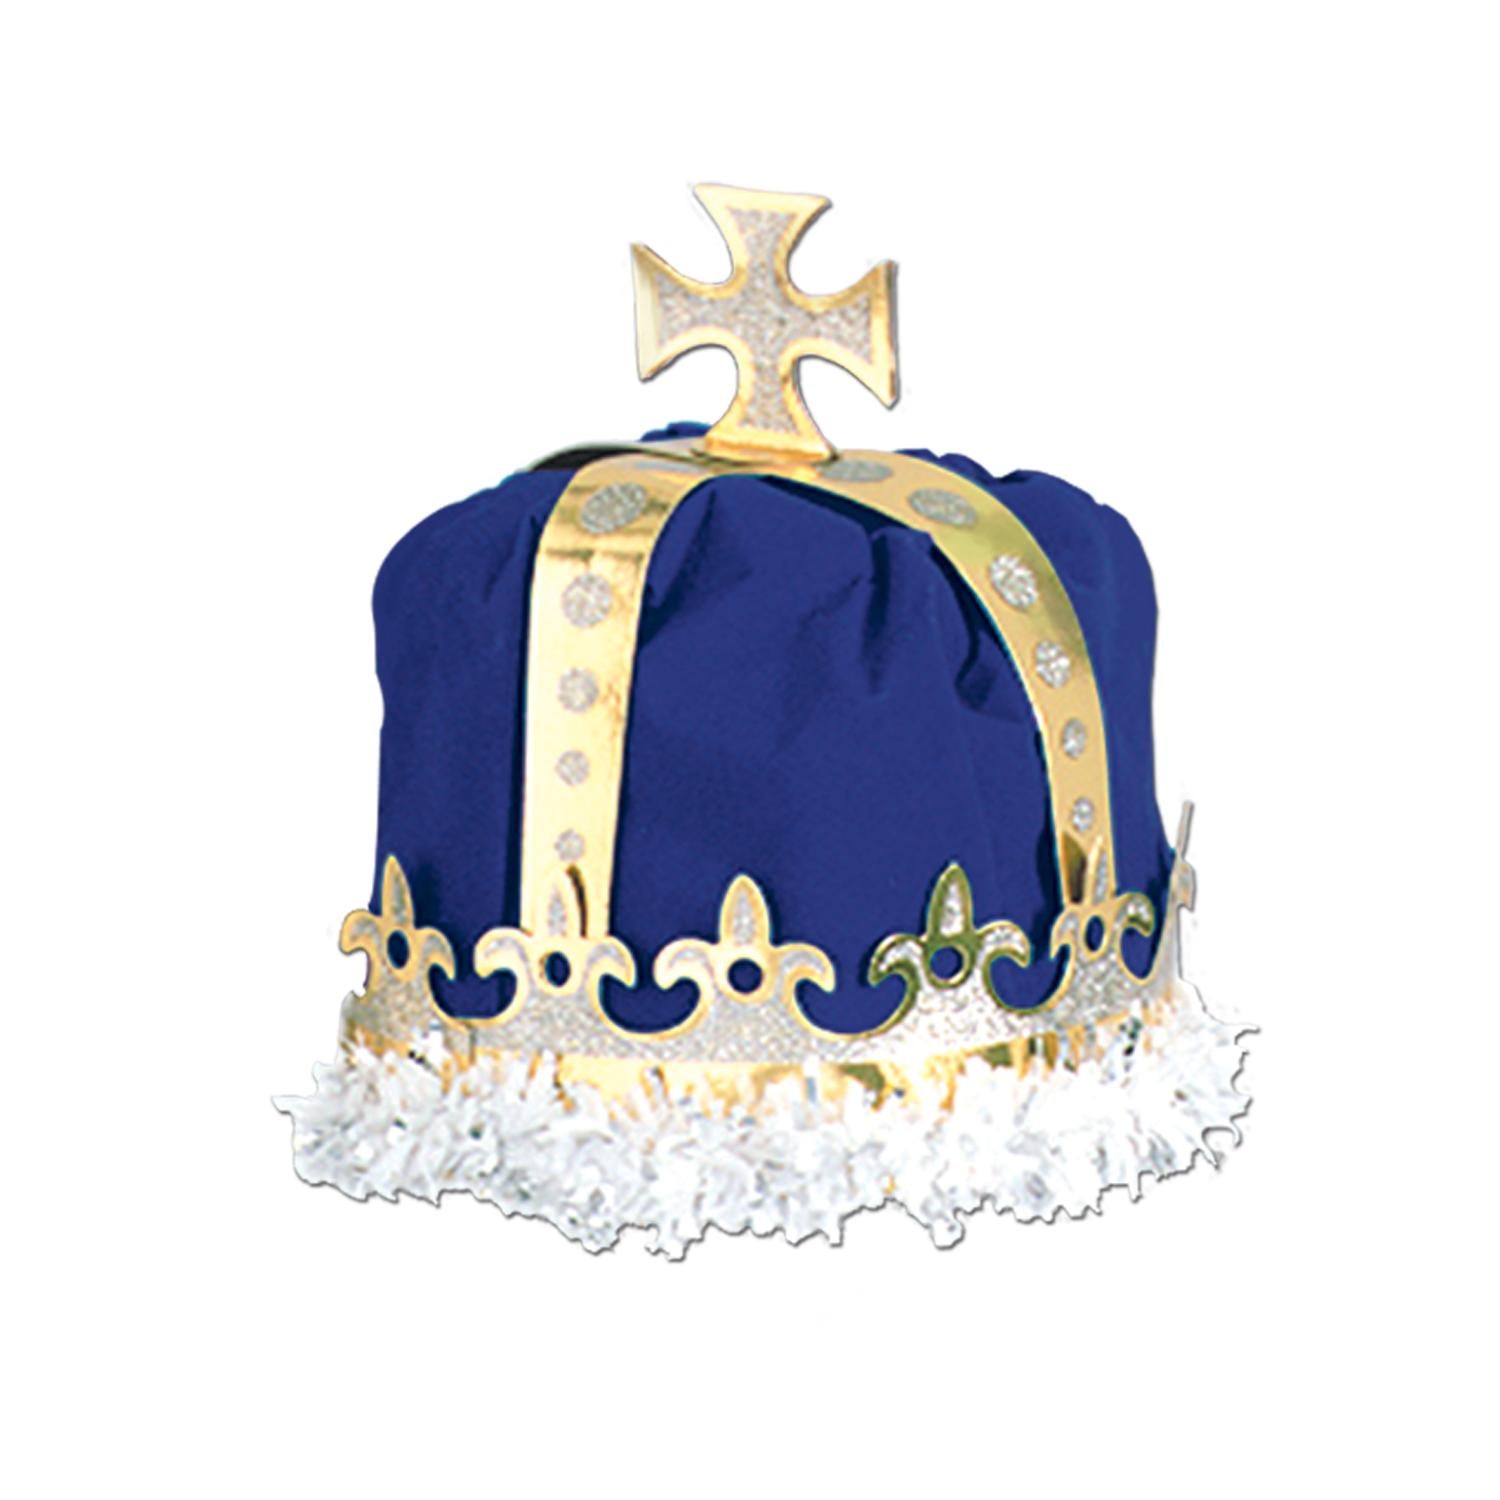 Beistle Royal King's Crown - blue - velvet-textured